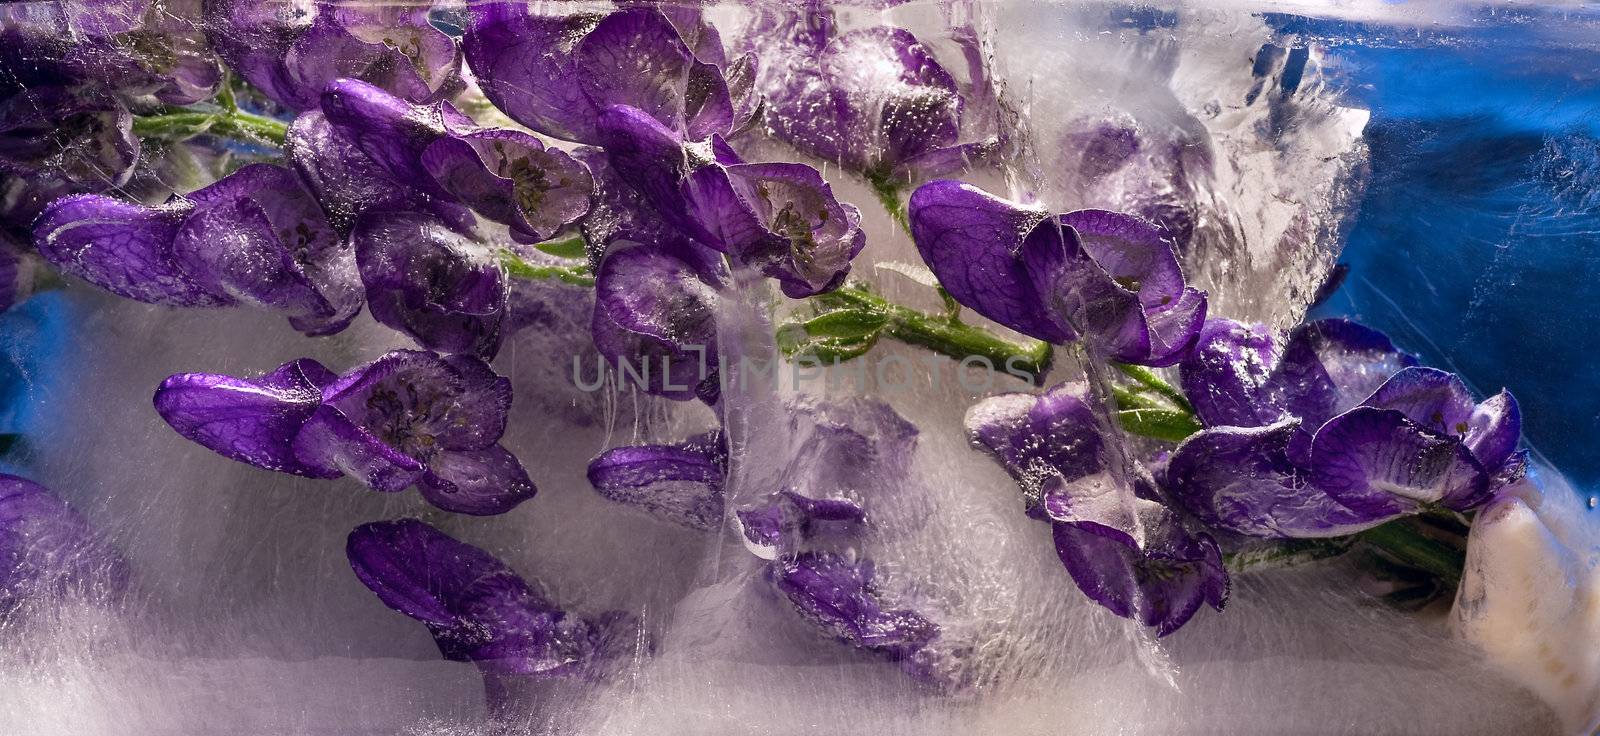 Flowers frozen in ice, art winter background.